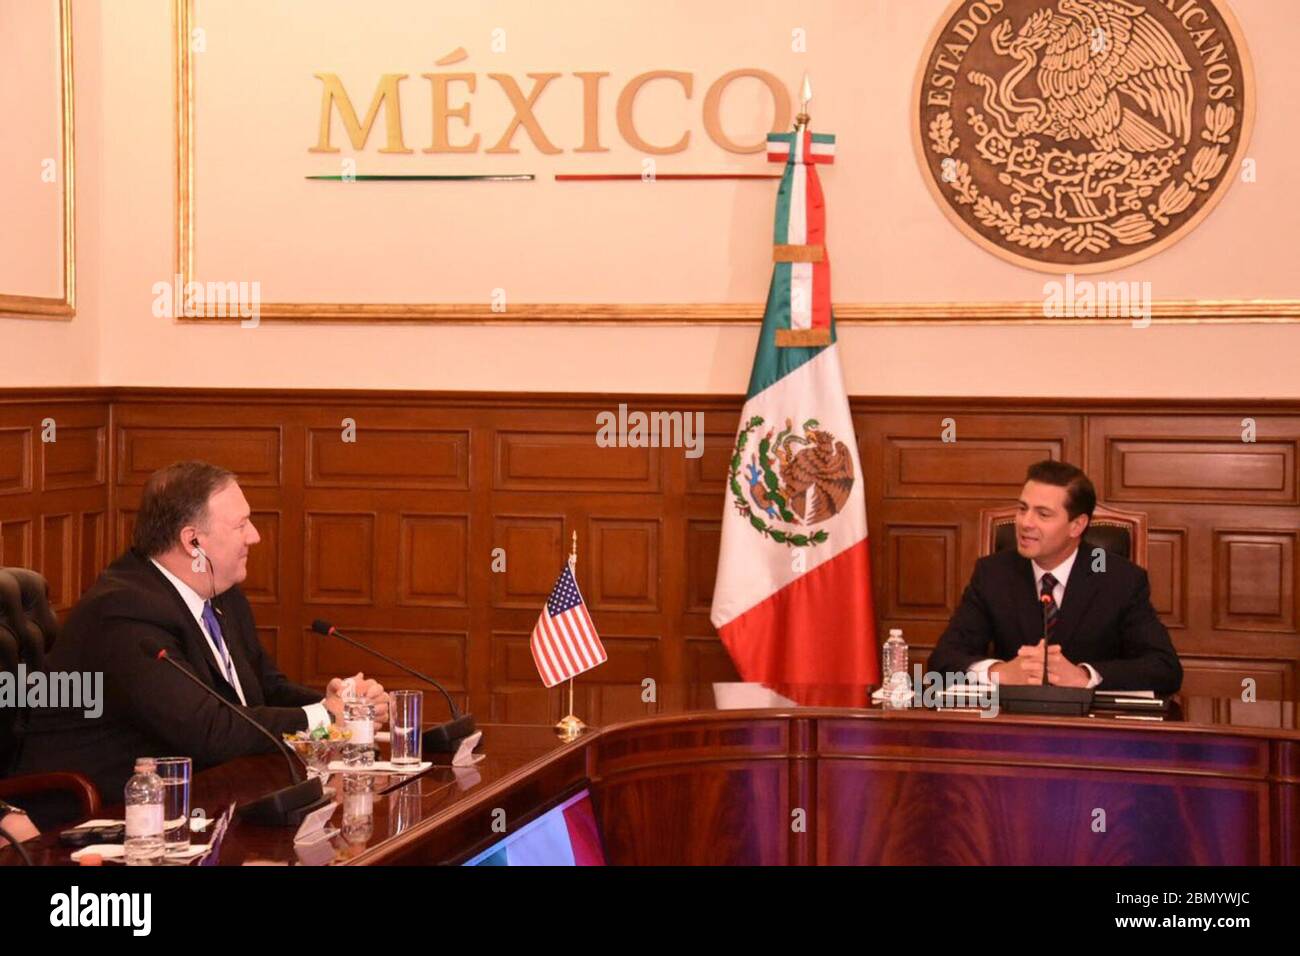 Il Segretario Pompeo incontra il Presidente messicano Nieto a Città del Messico il Segretario di Stato americano Michael R. Pompeo incontra il Presidente messicano Enrique Peña Nieto a Los Pinos a Città del Messico, Messico, il 13 luglio 2018. Foto Stock